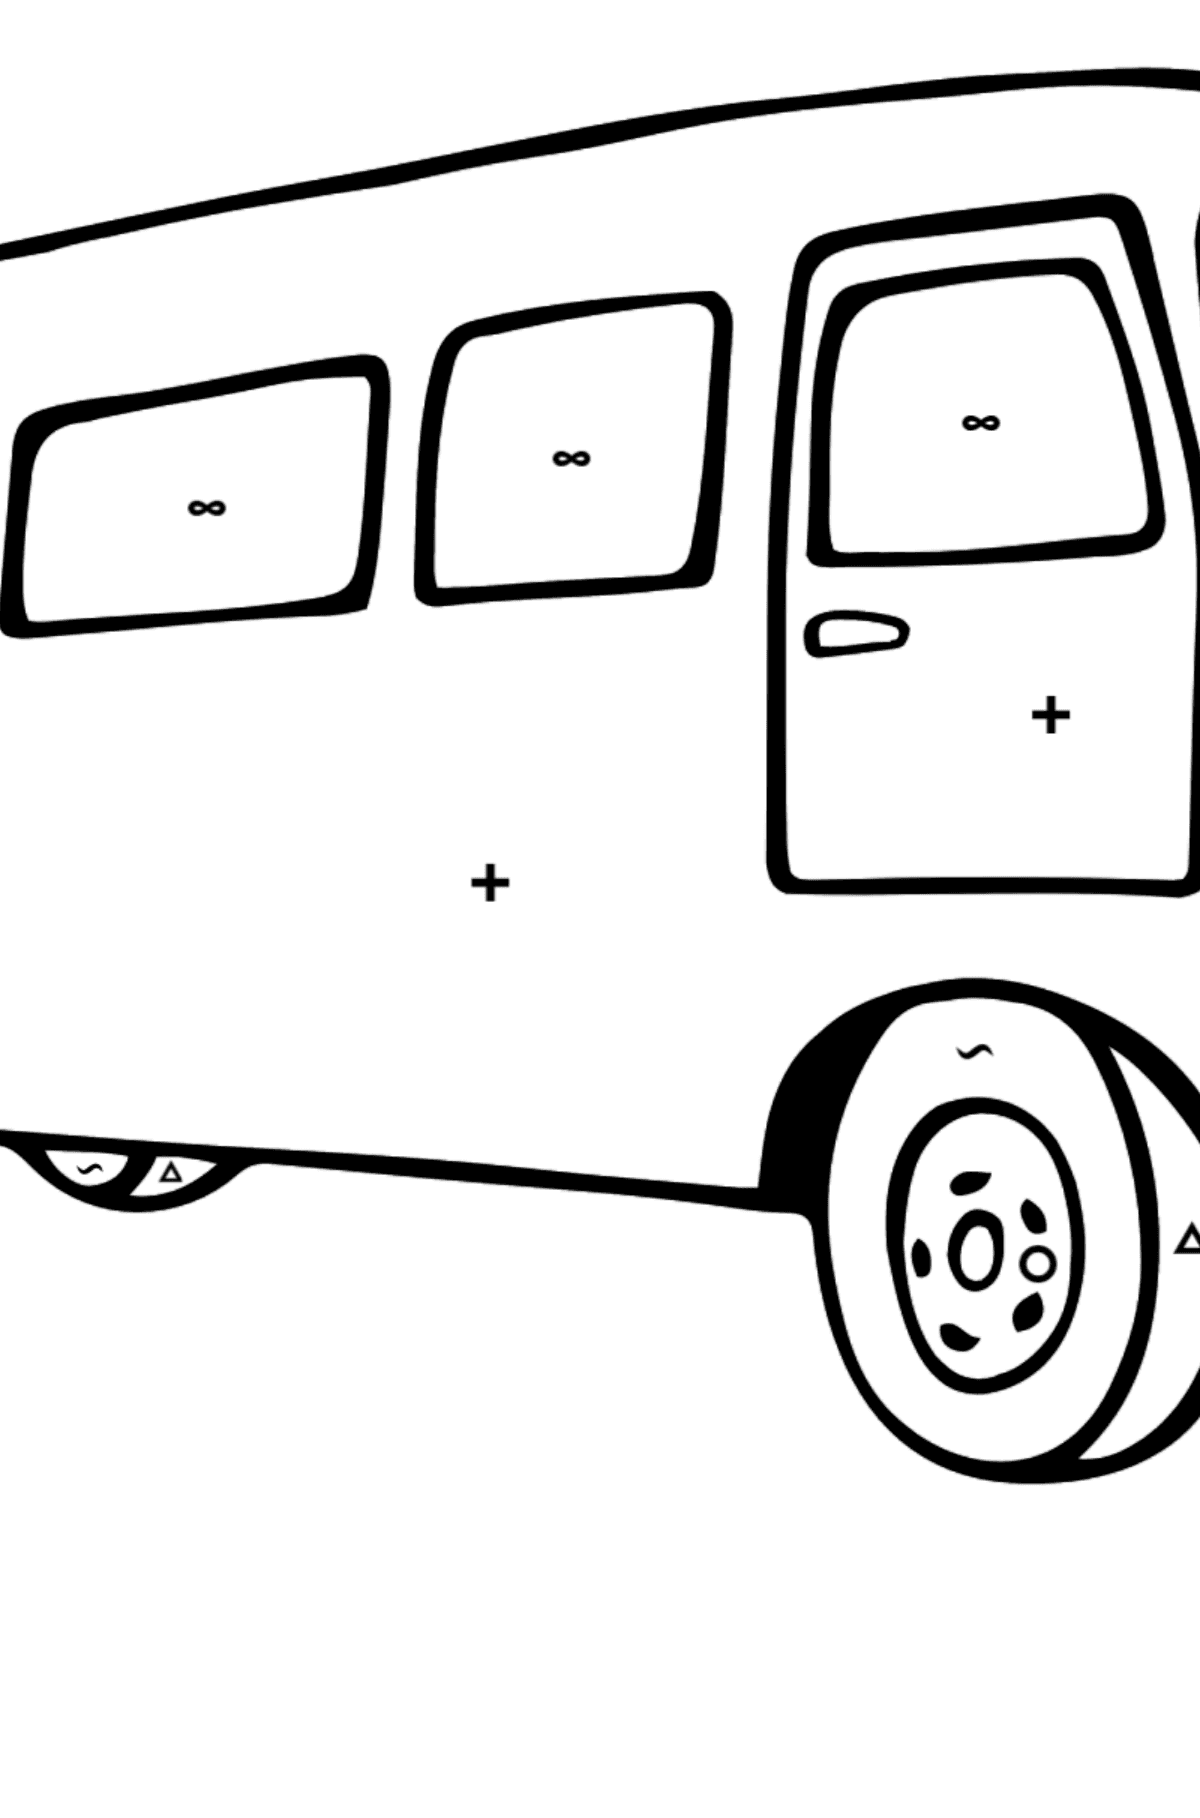 Tegning til fargelegging busspassasjer - Fargelegge etter symboler og geometriske former for barn